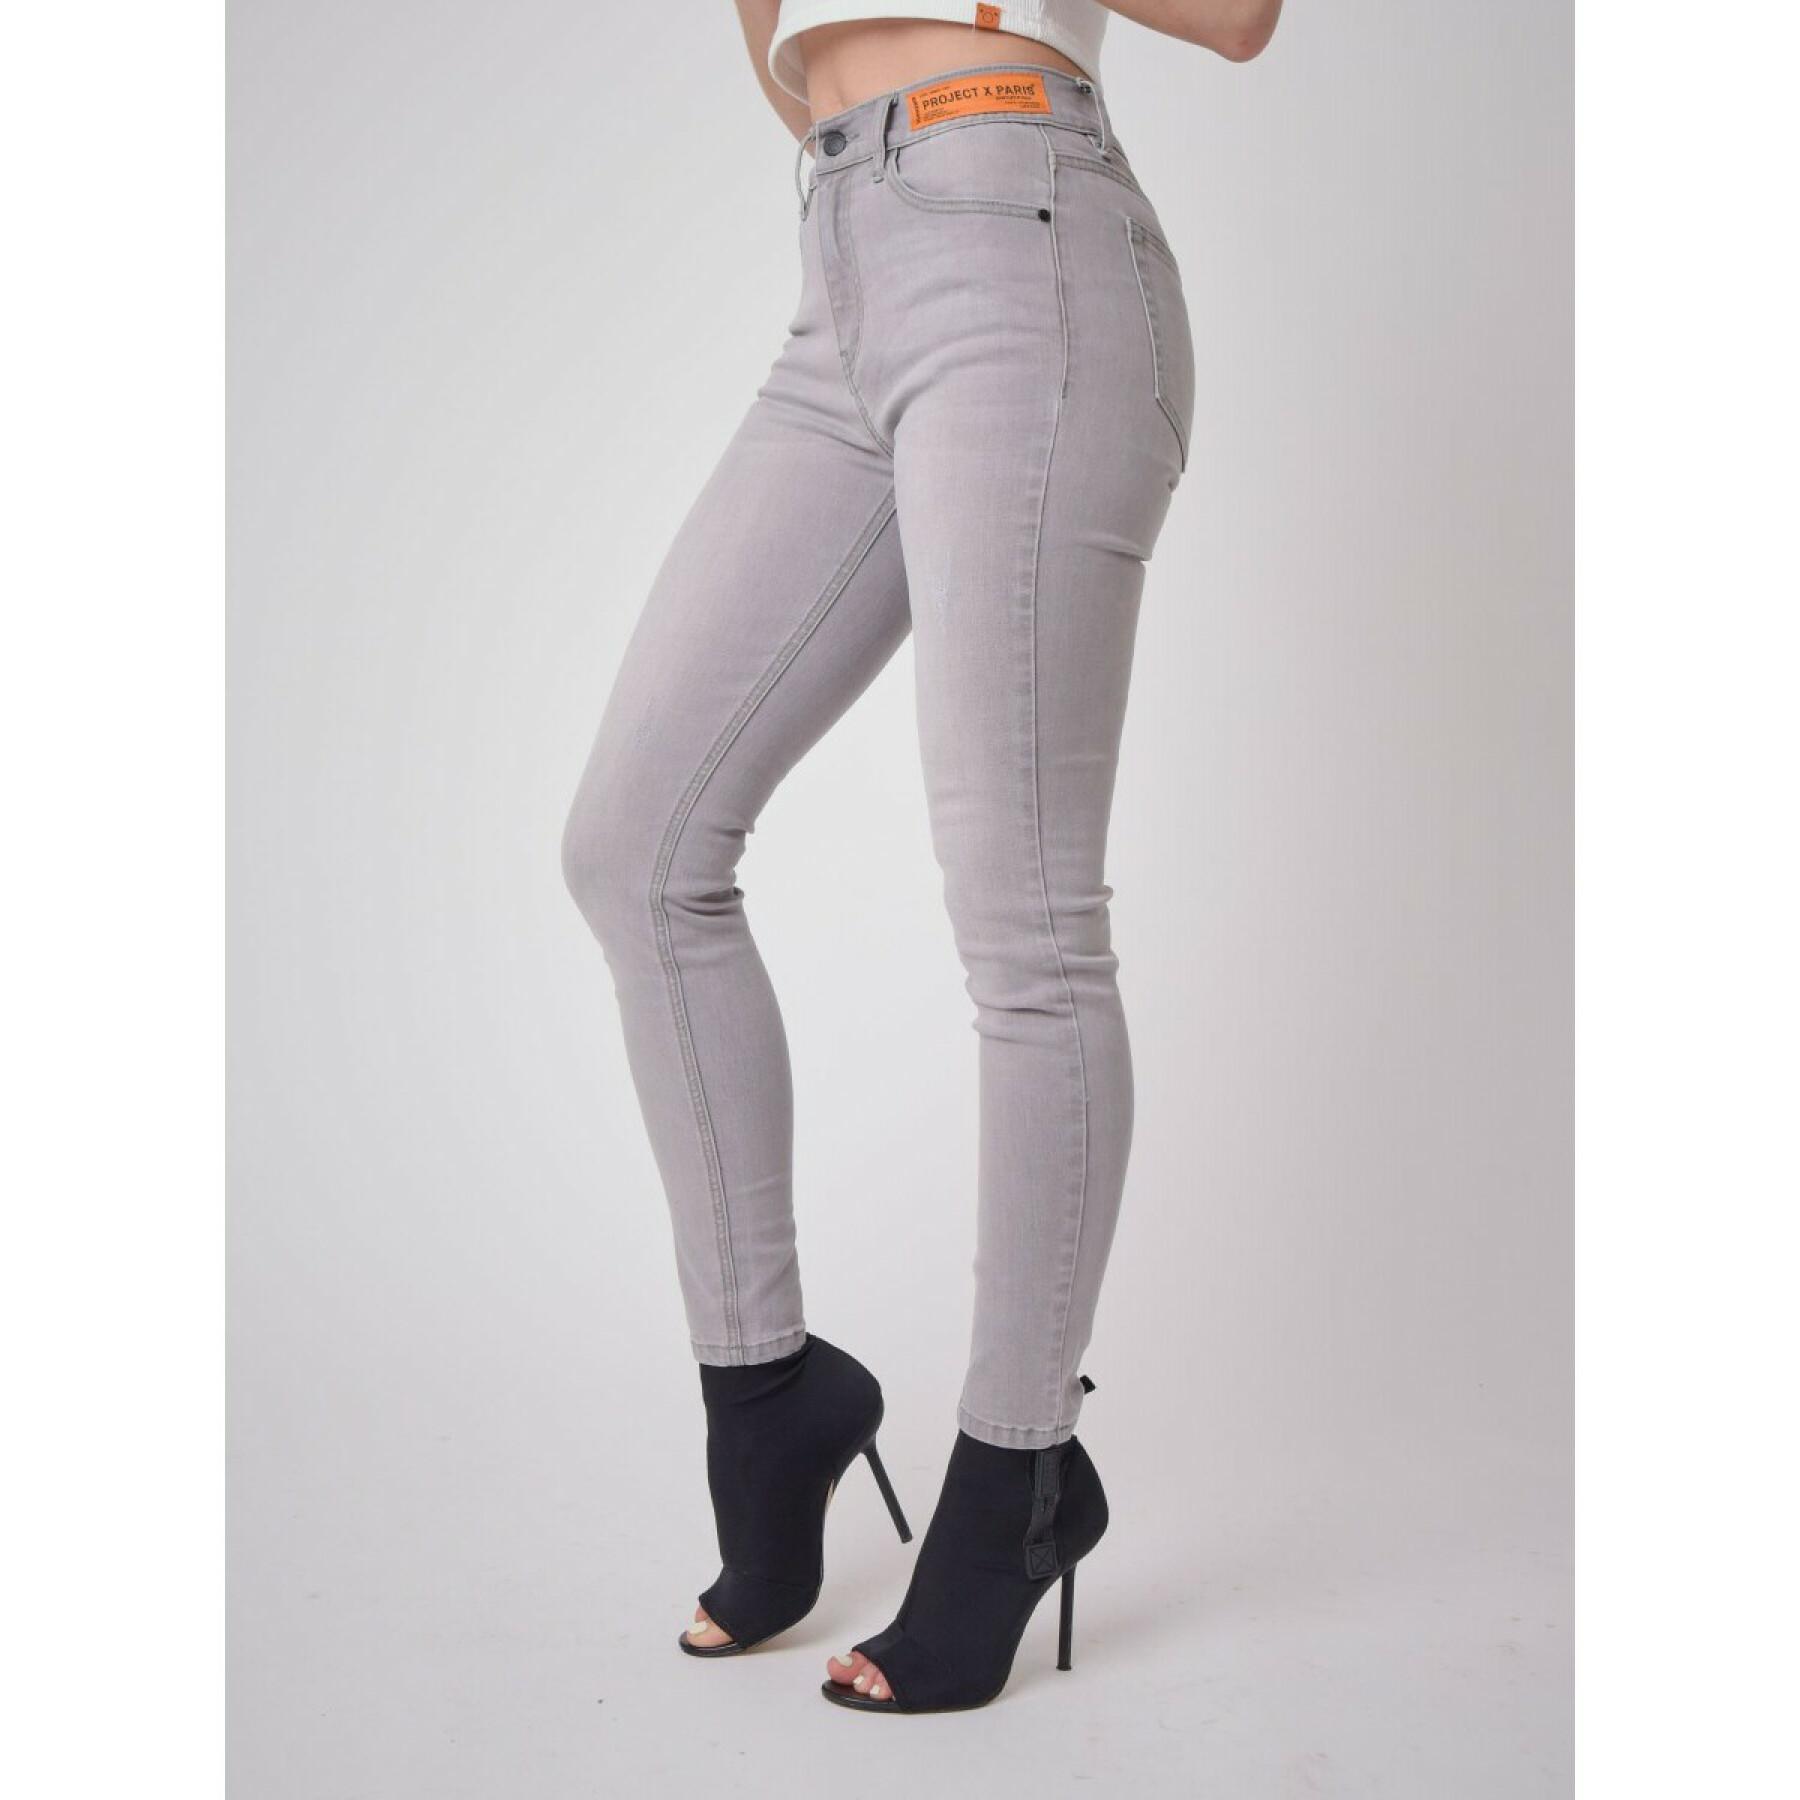 Jeans skinny fit logo étiquette femme Project X Paris